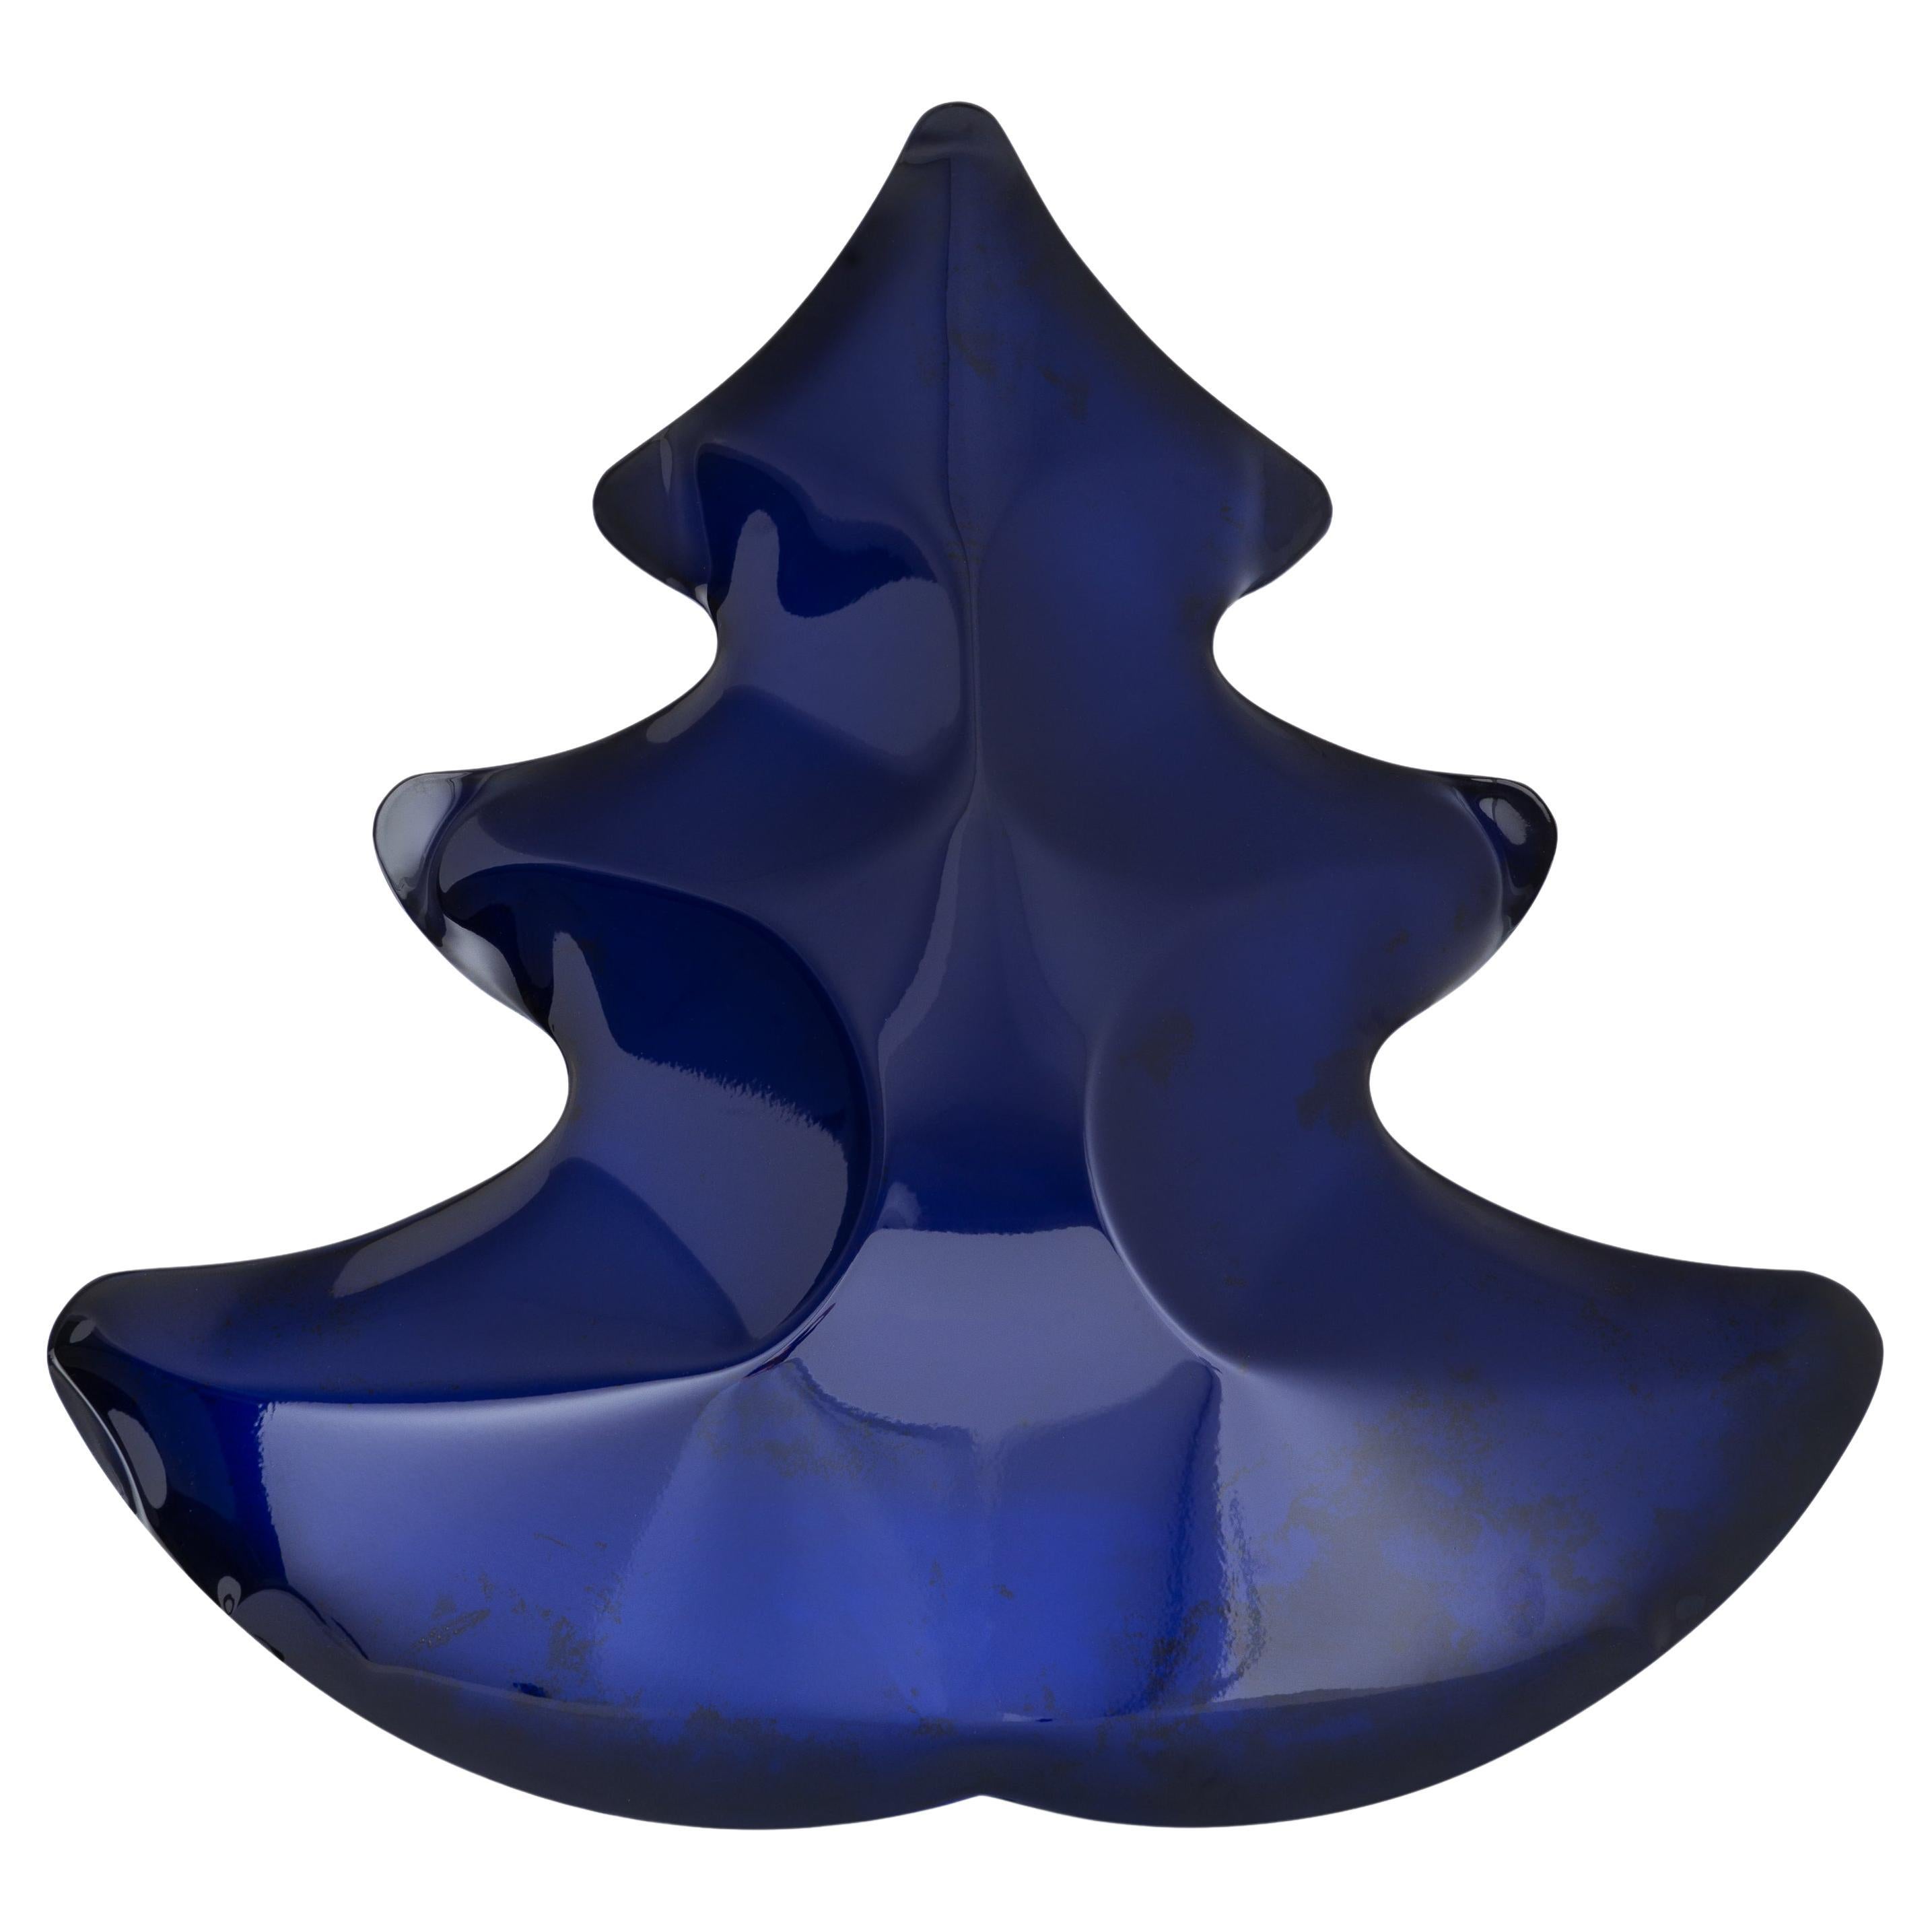 Grand arbre de Noël bleu de Zieta